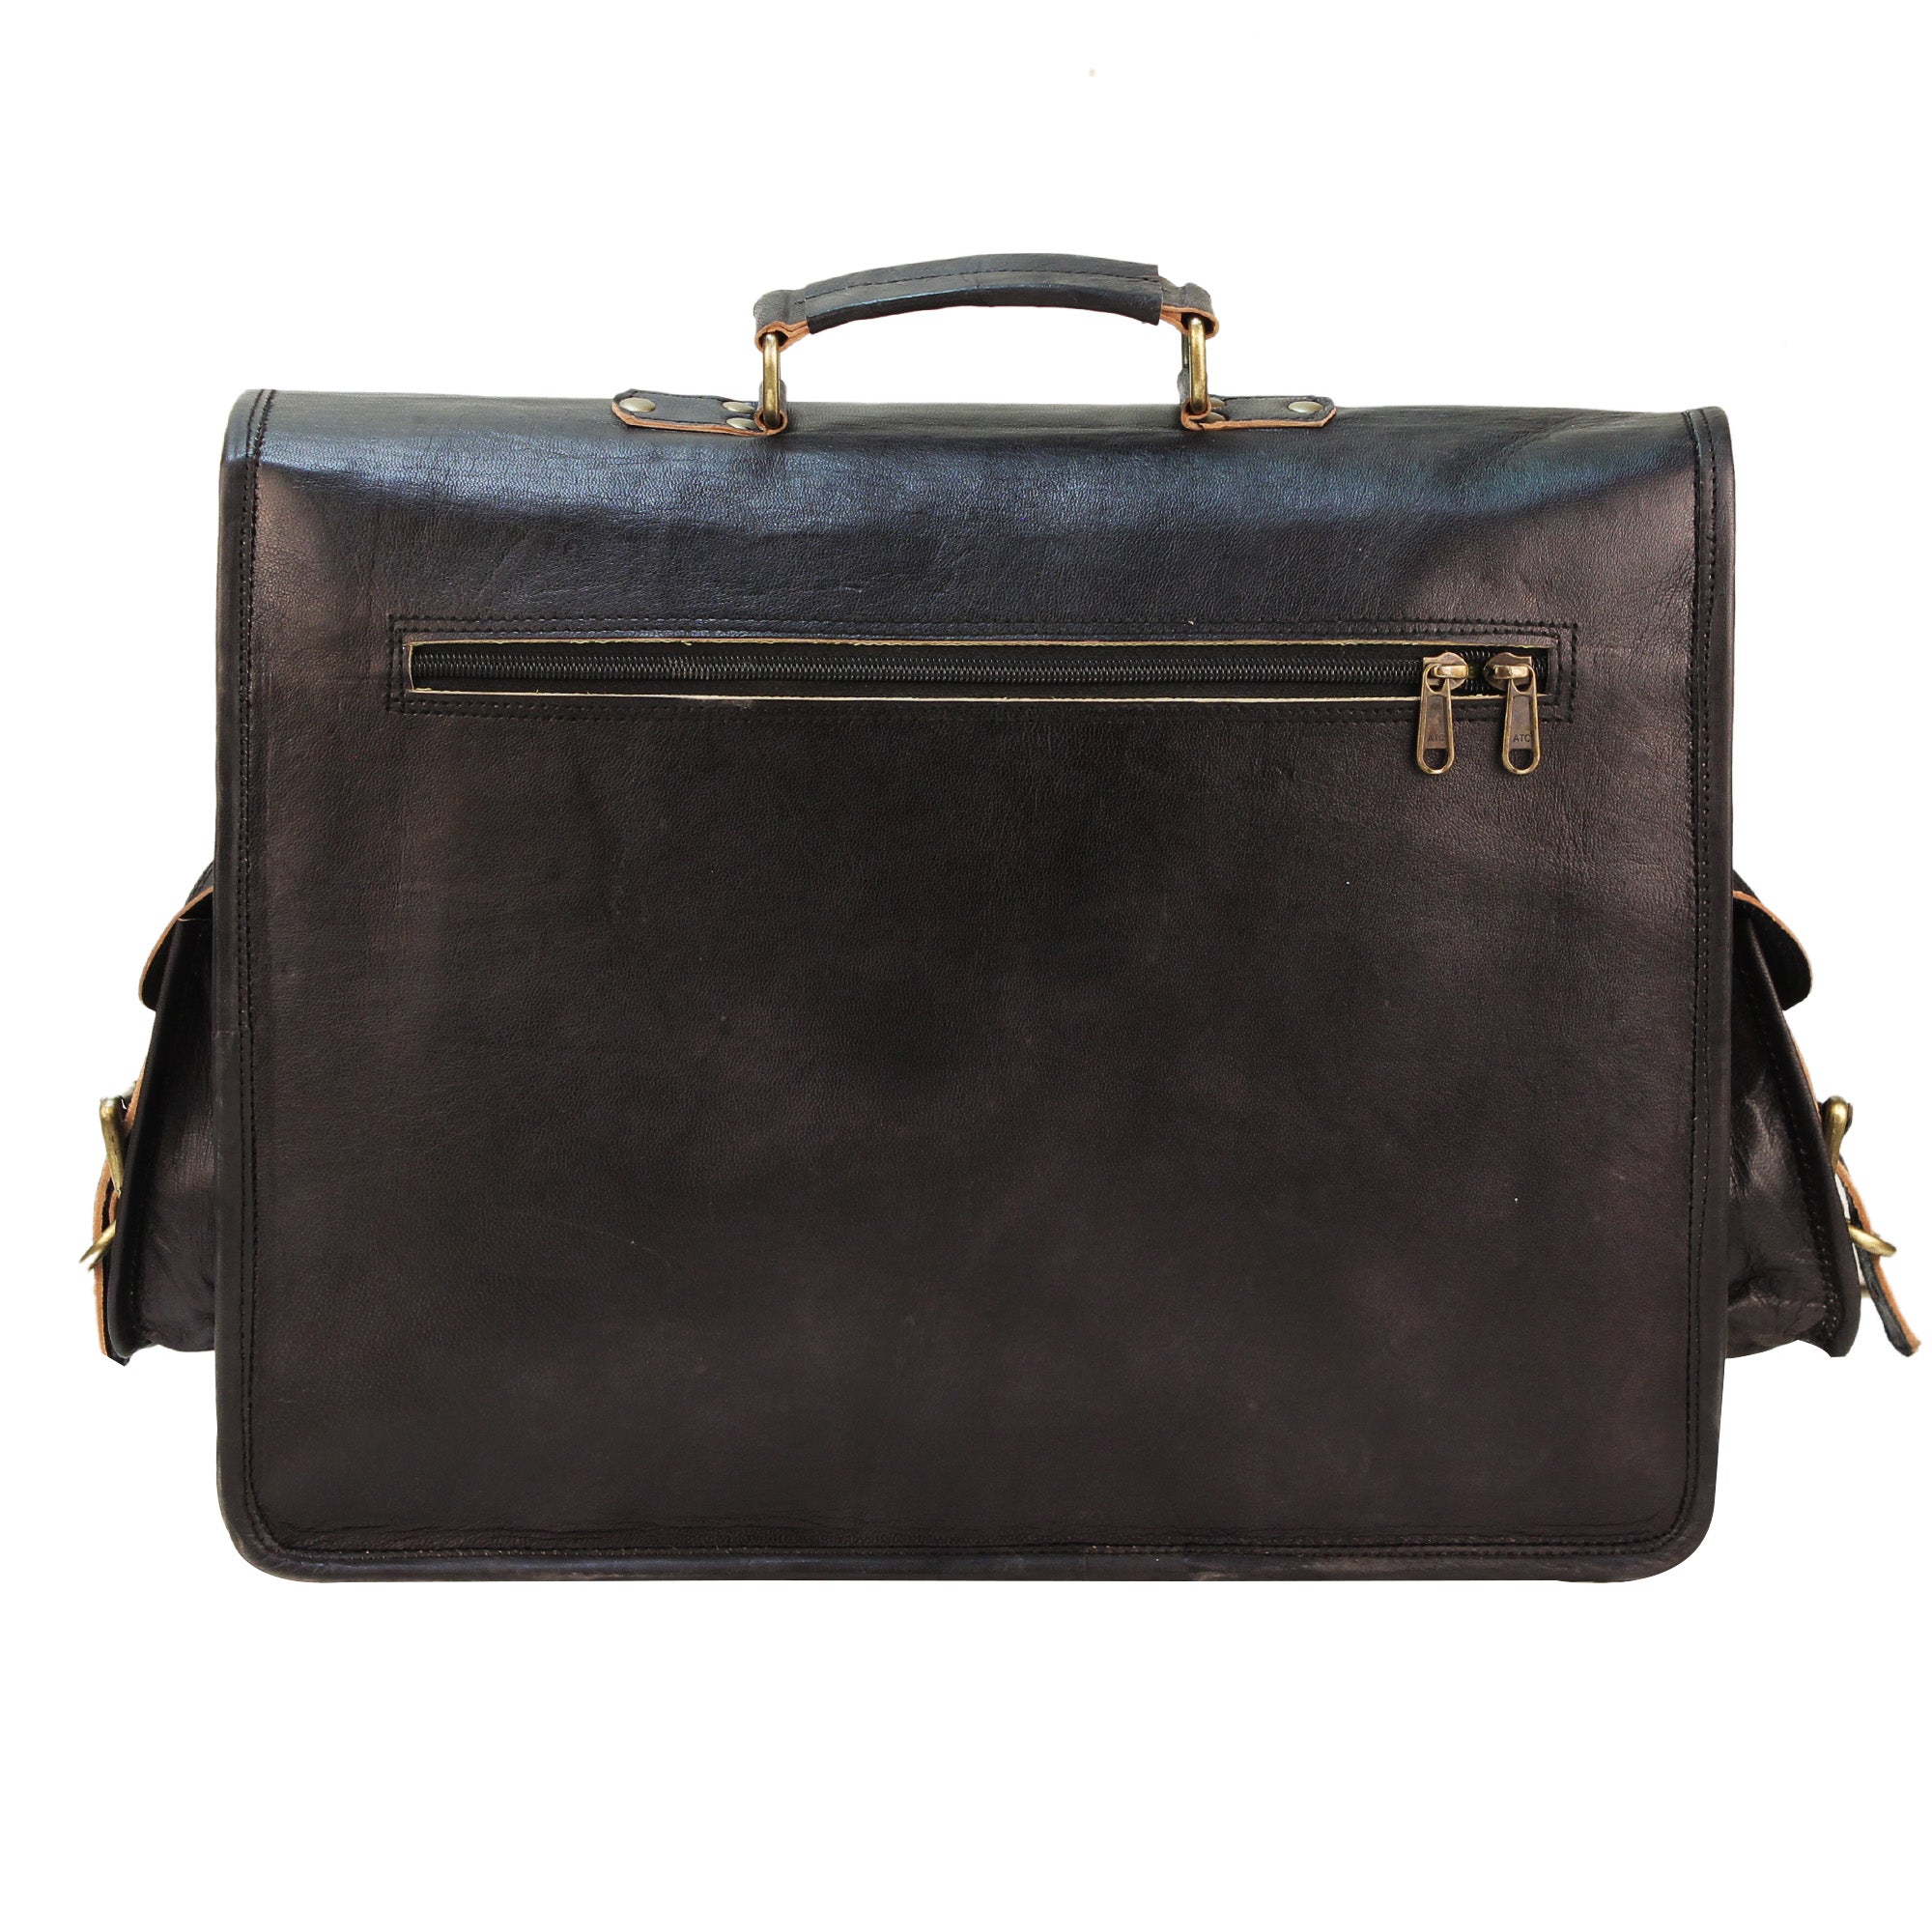 Black Leather Messenger Bag with Adjustable Strap